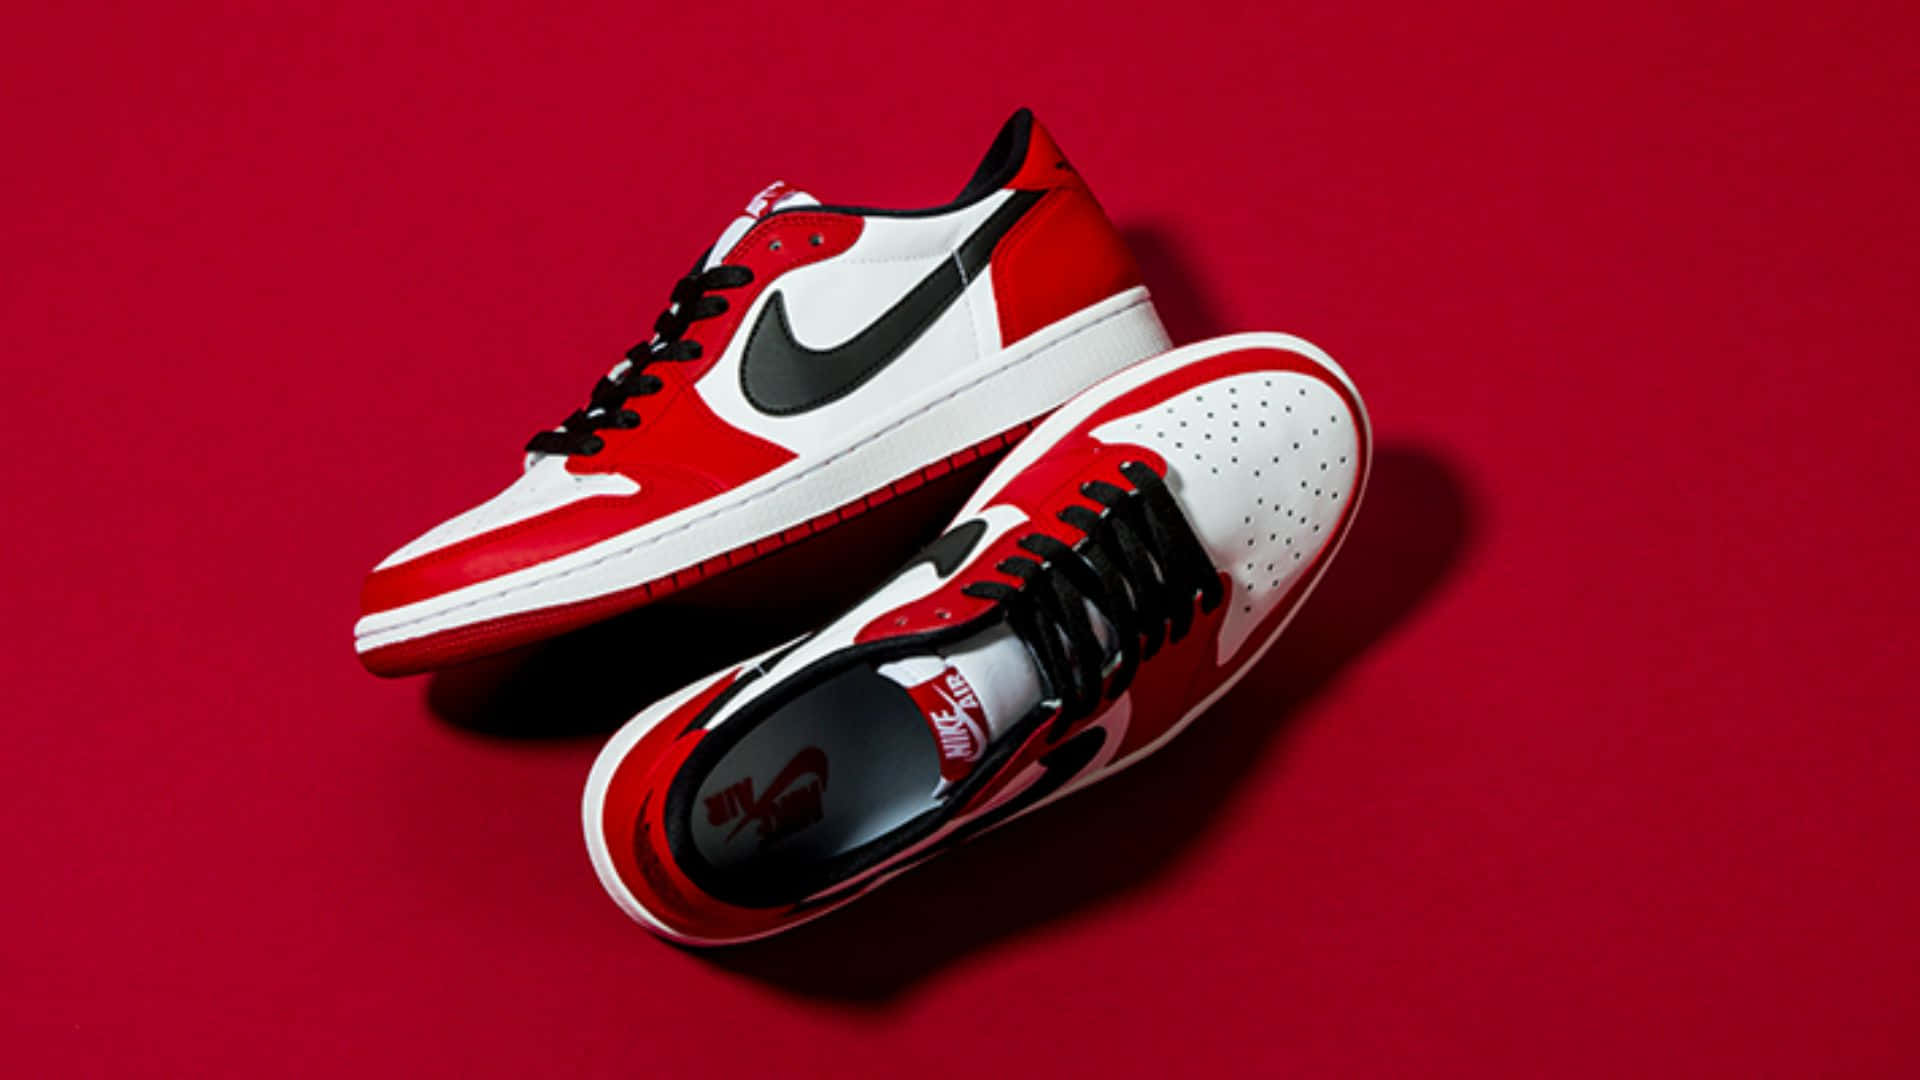 Røde Air Jordan sko til atleter og sneaker fans. Wallpaper